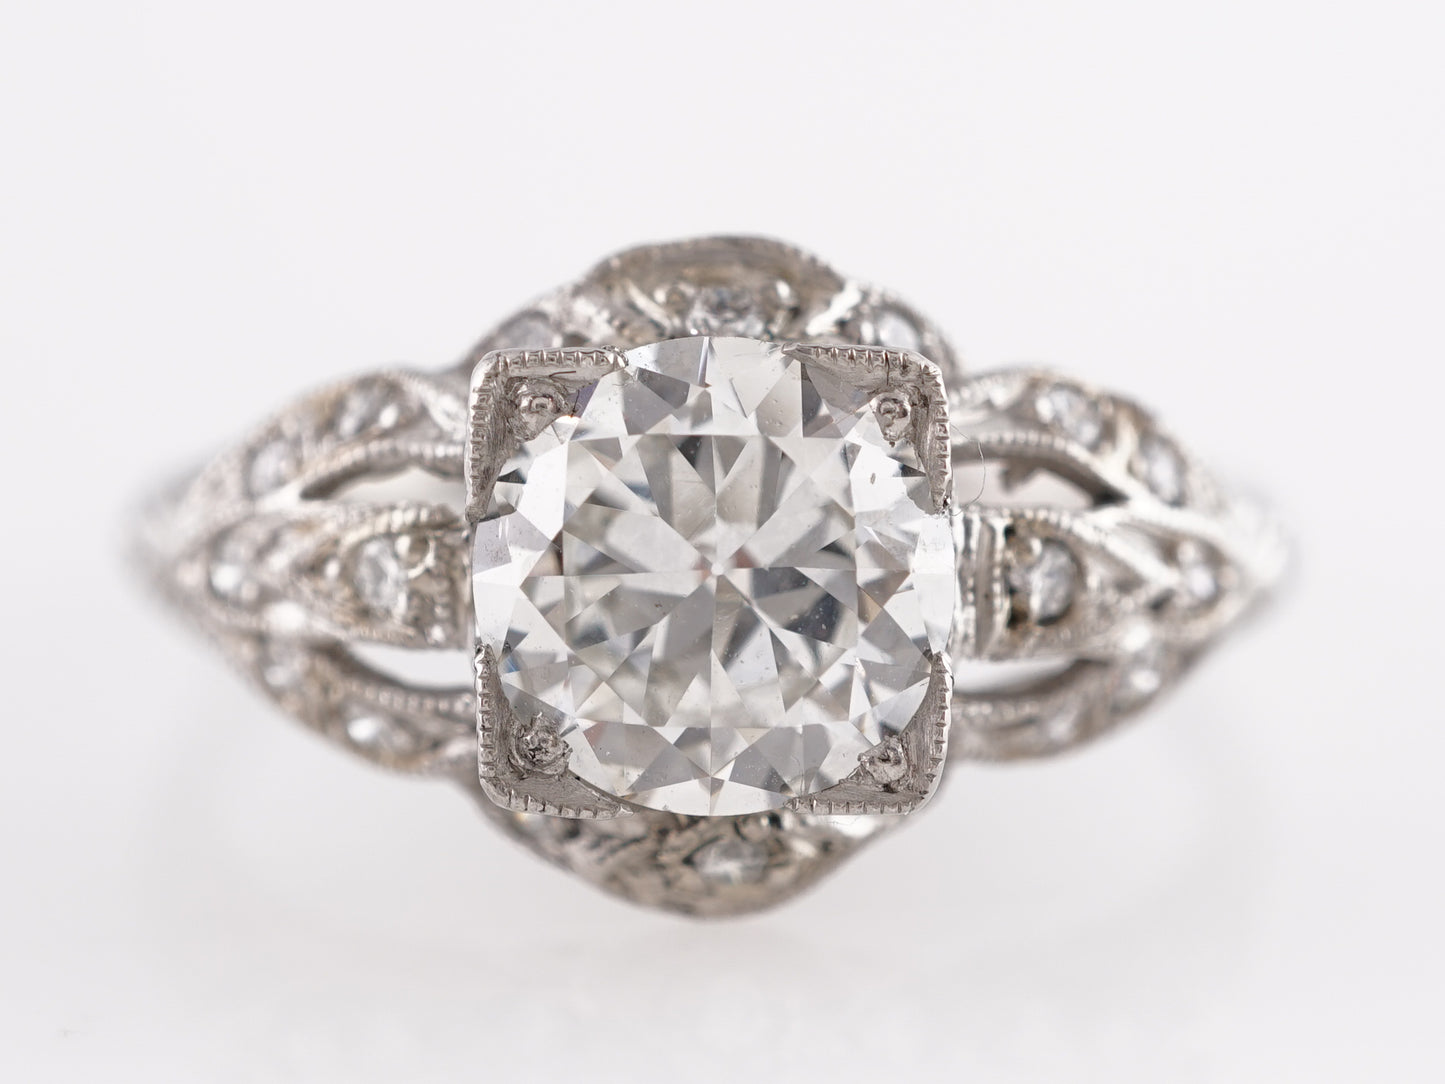 1.16 Art Deco European Cut Diamond Engagement Ring in Platinum